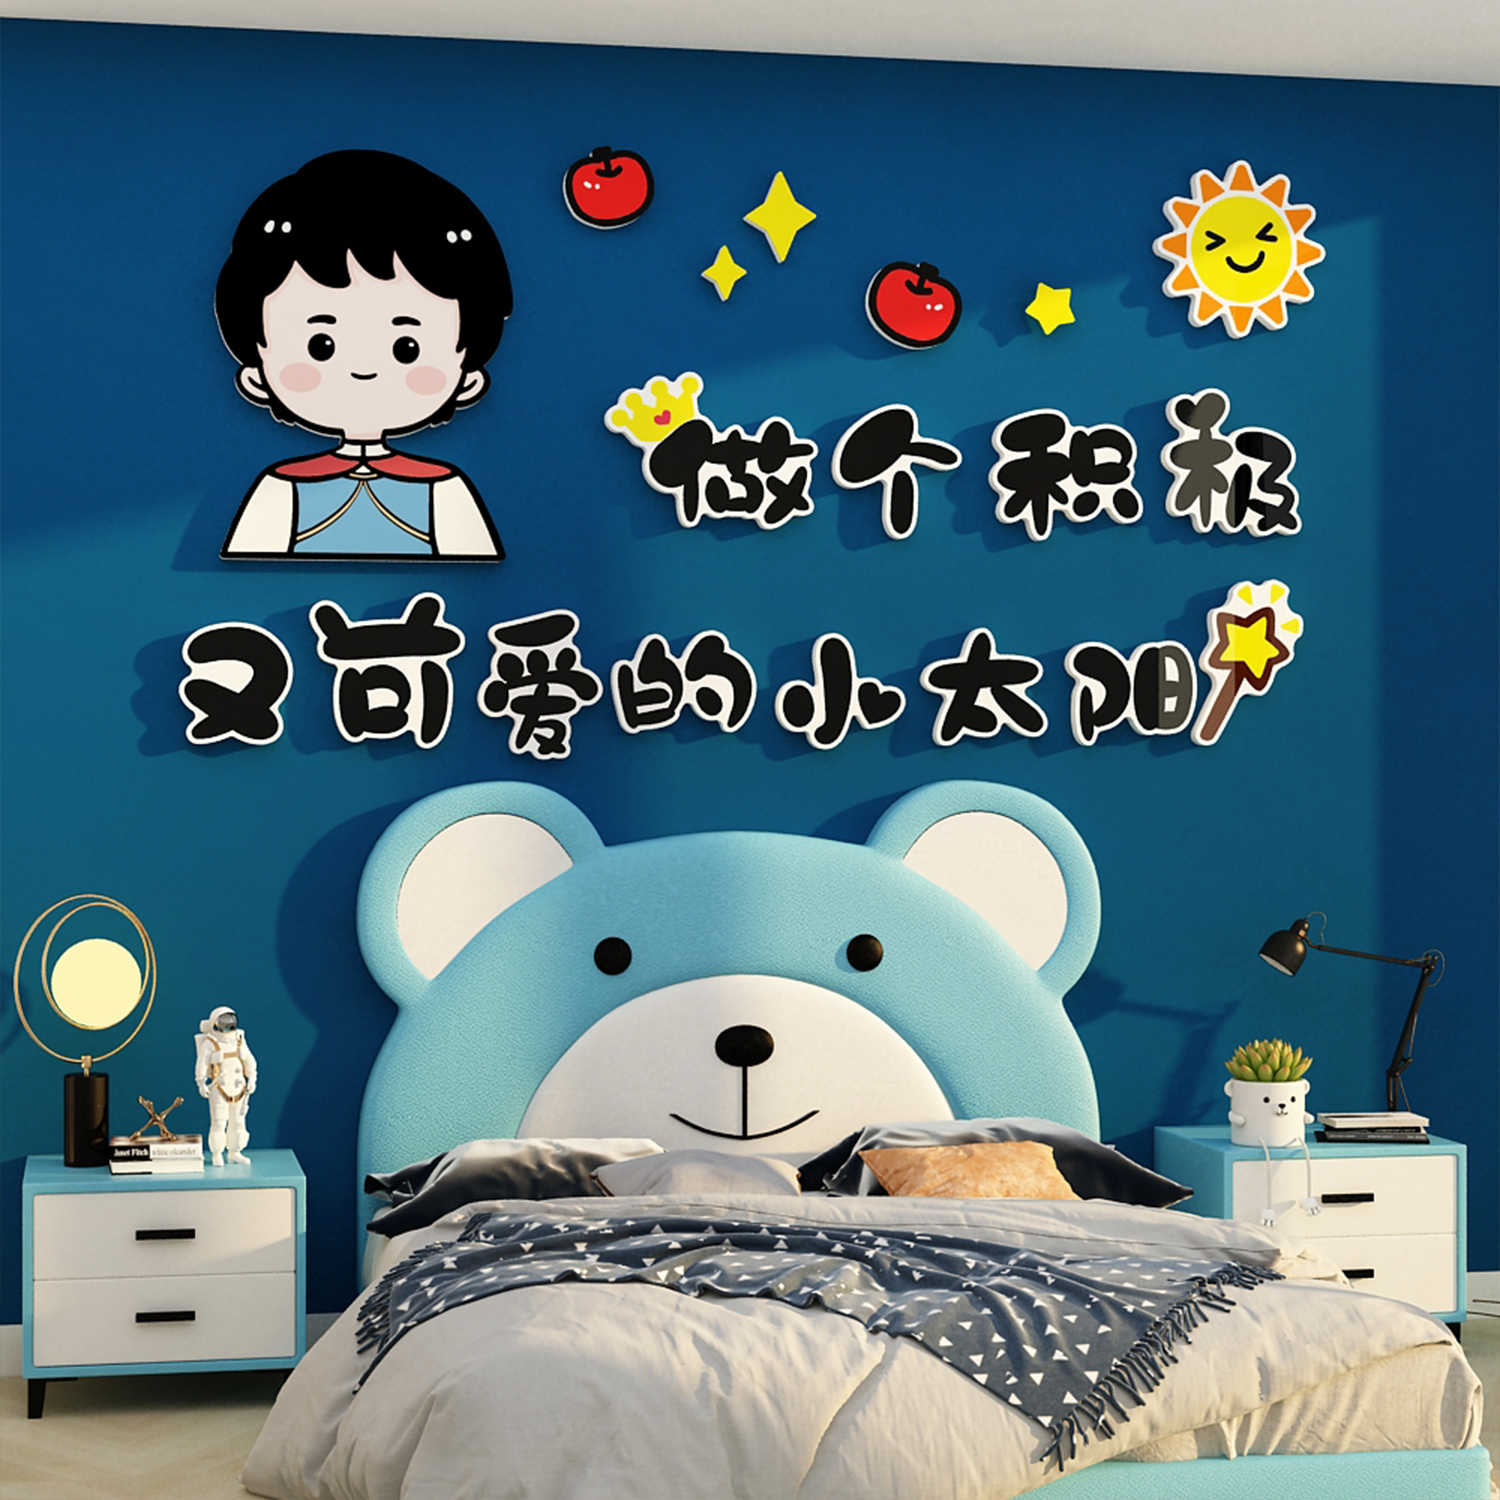 网红儿童房间布置墙面装饰区男女孩玩具卧室床头背景卡通贴纸挂画